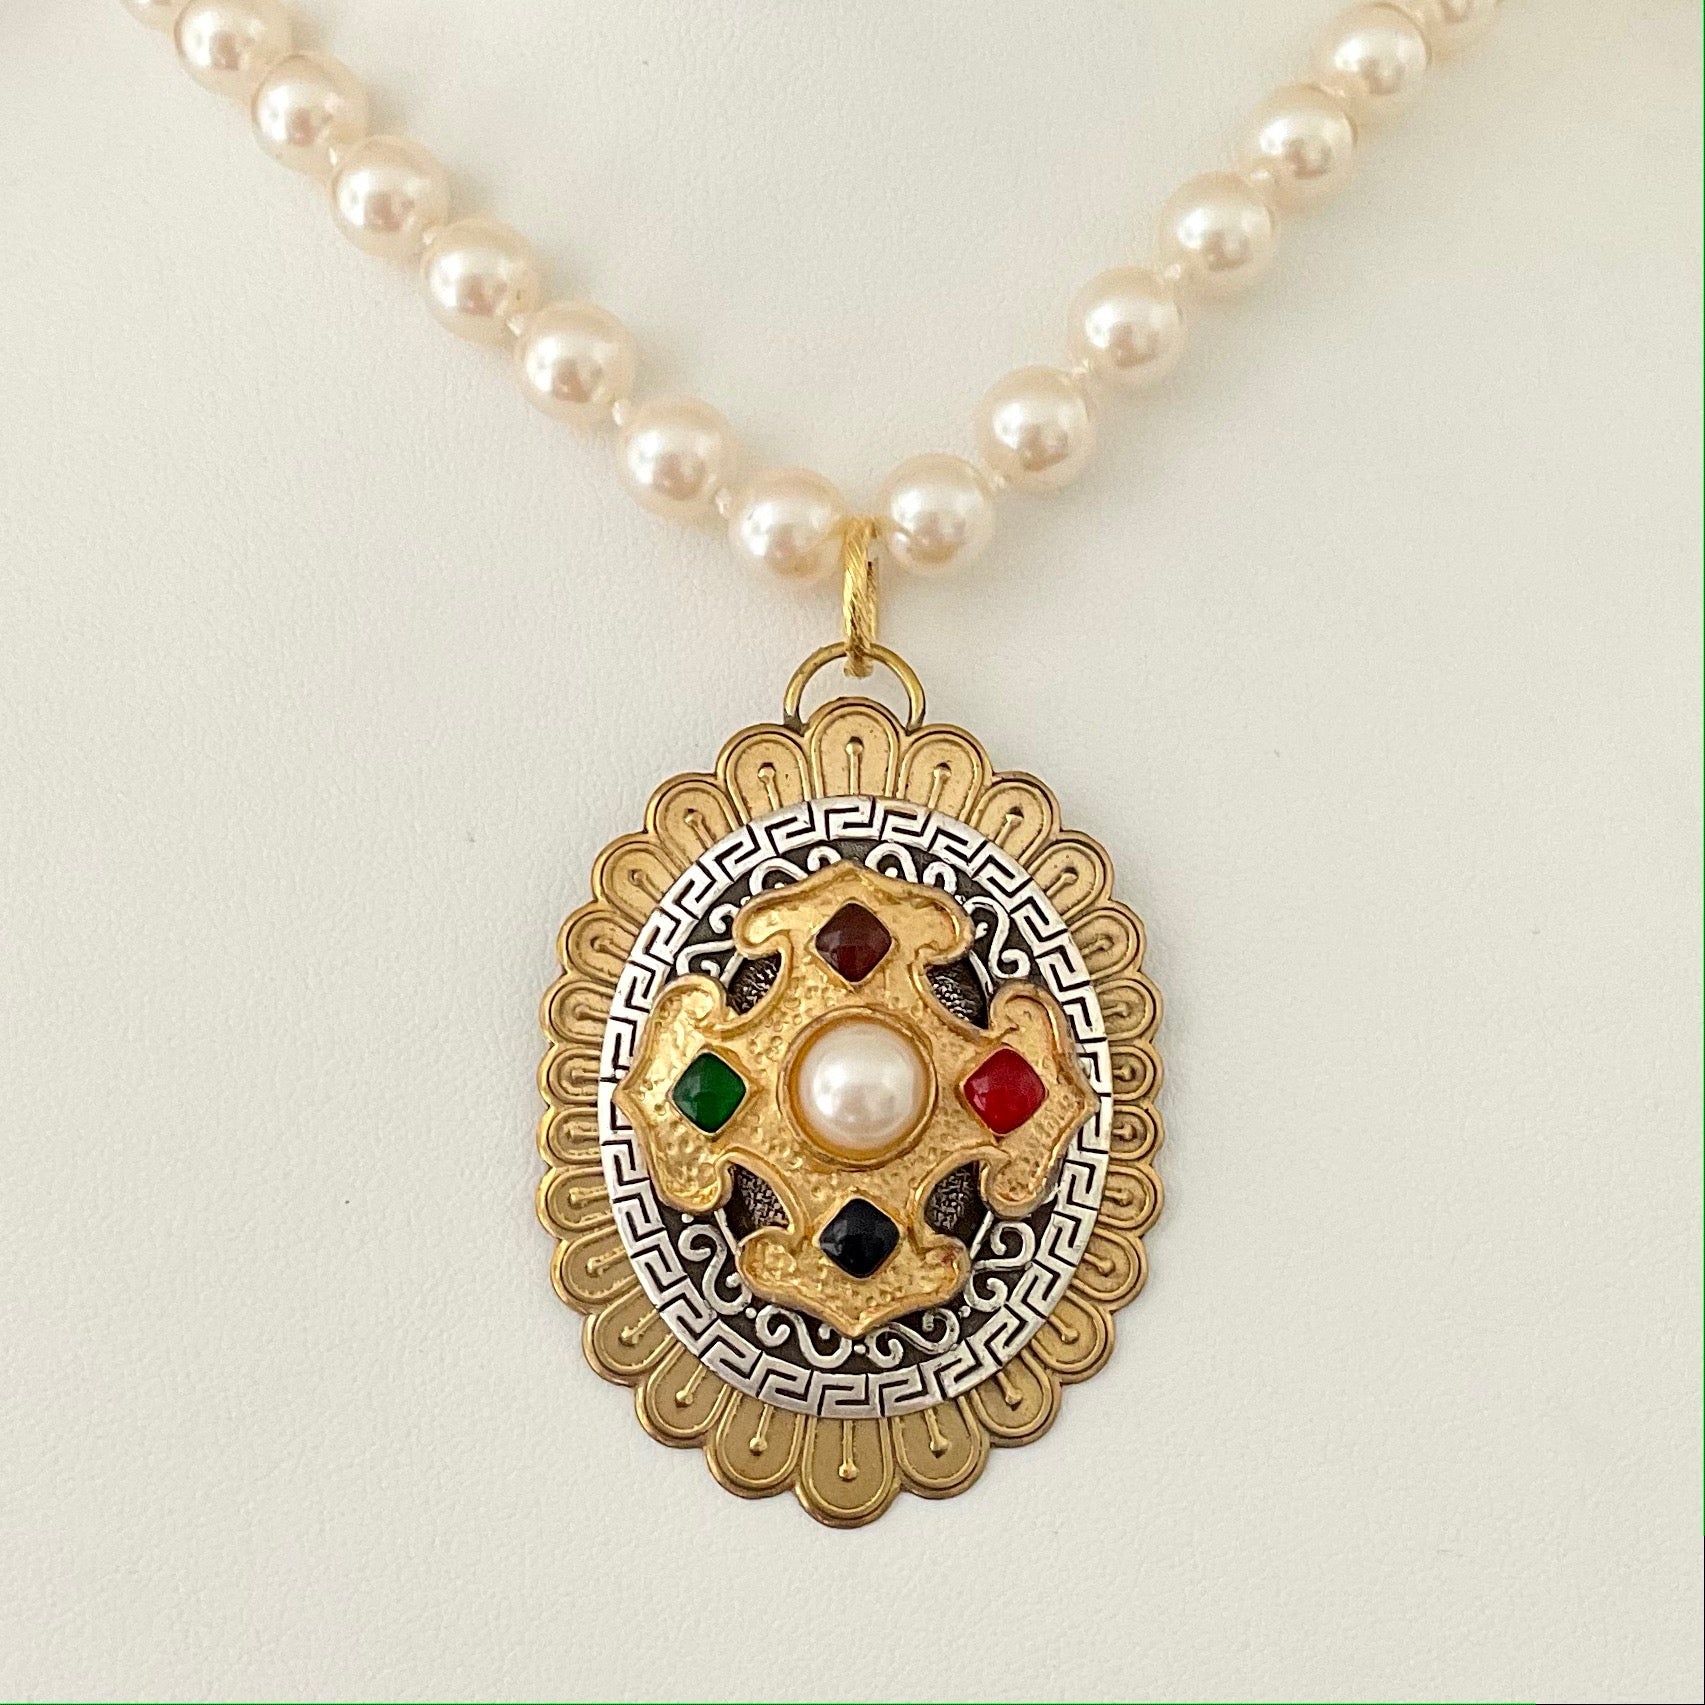 Vintage Pearls with Repurposed Vintage Earring Pendant 24